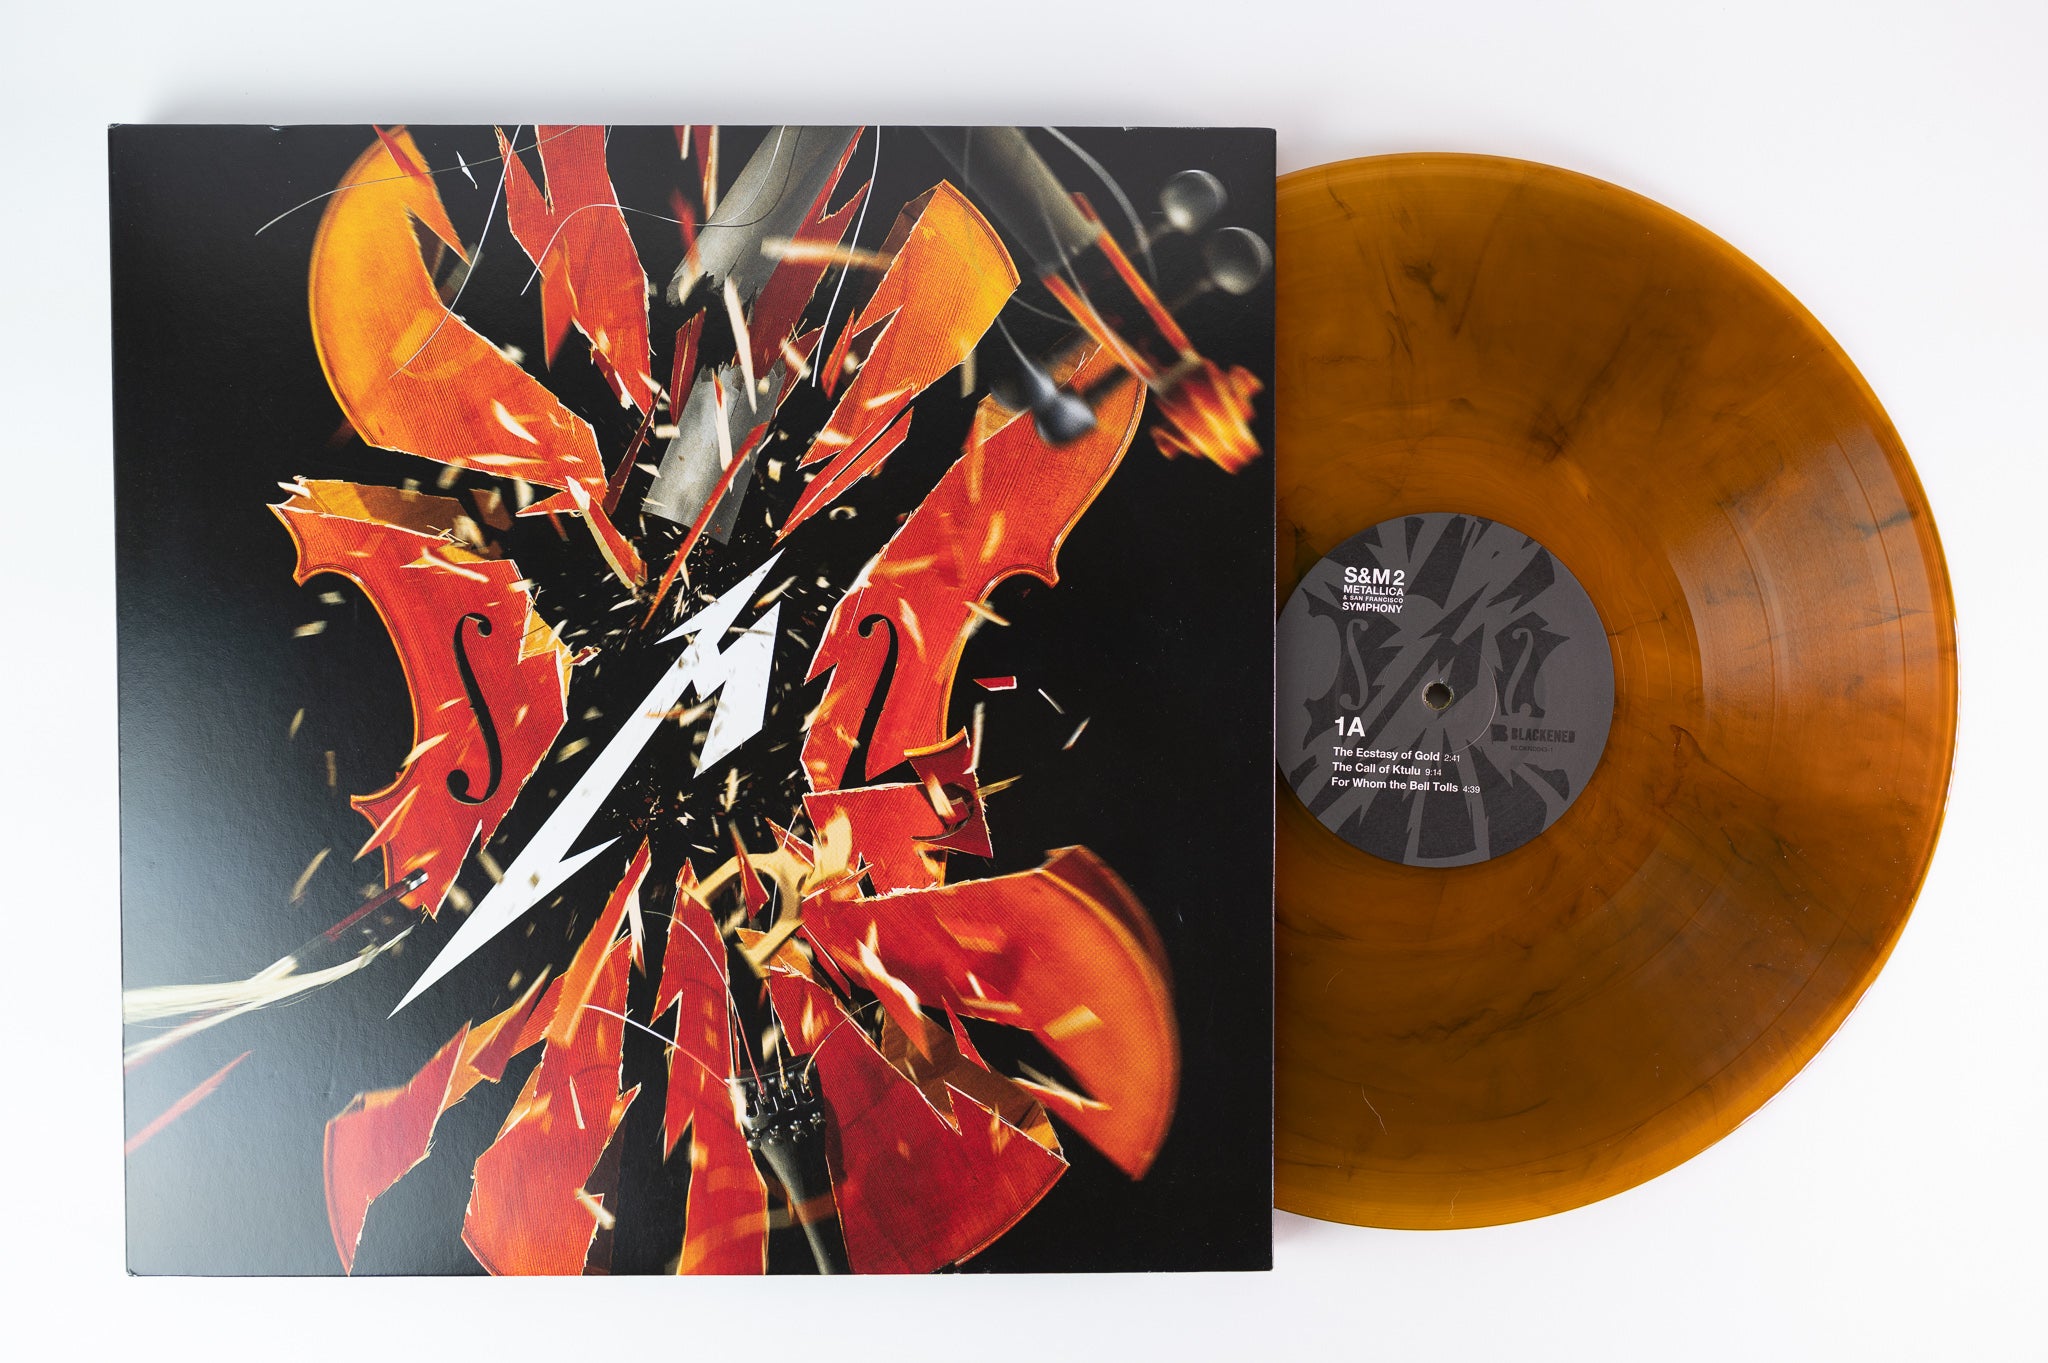 Metallica - S&M2 on Blackened Limited Orange Vinyl